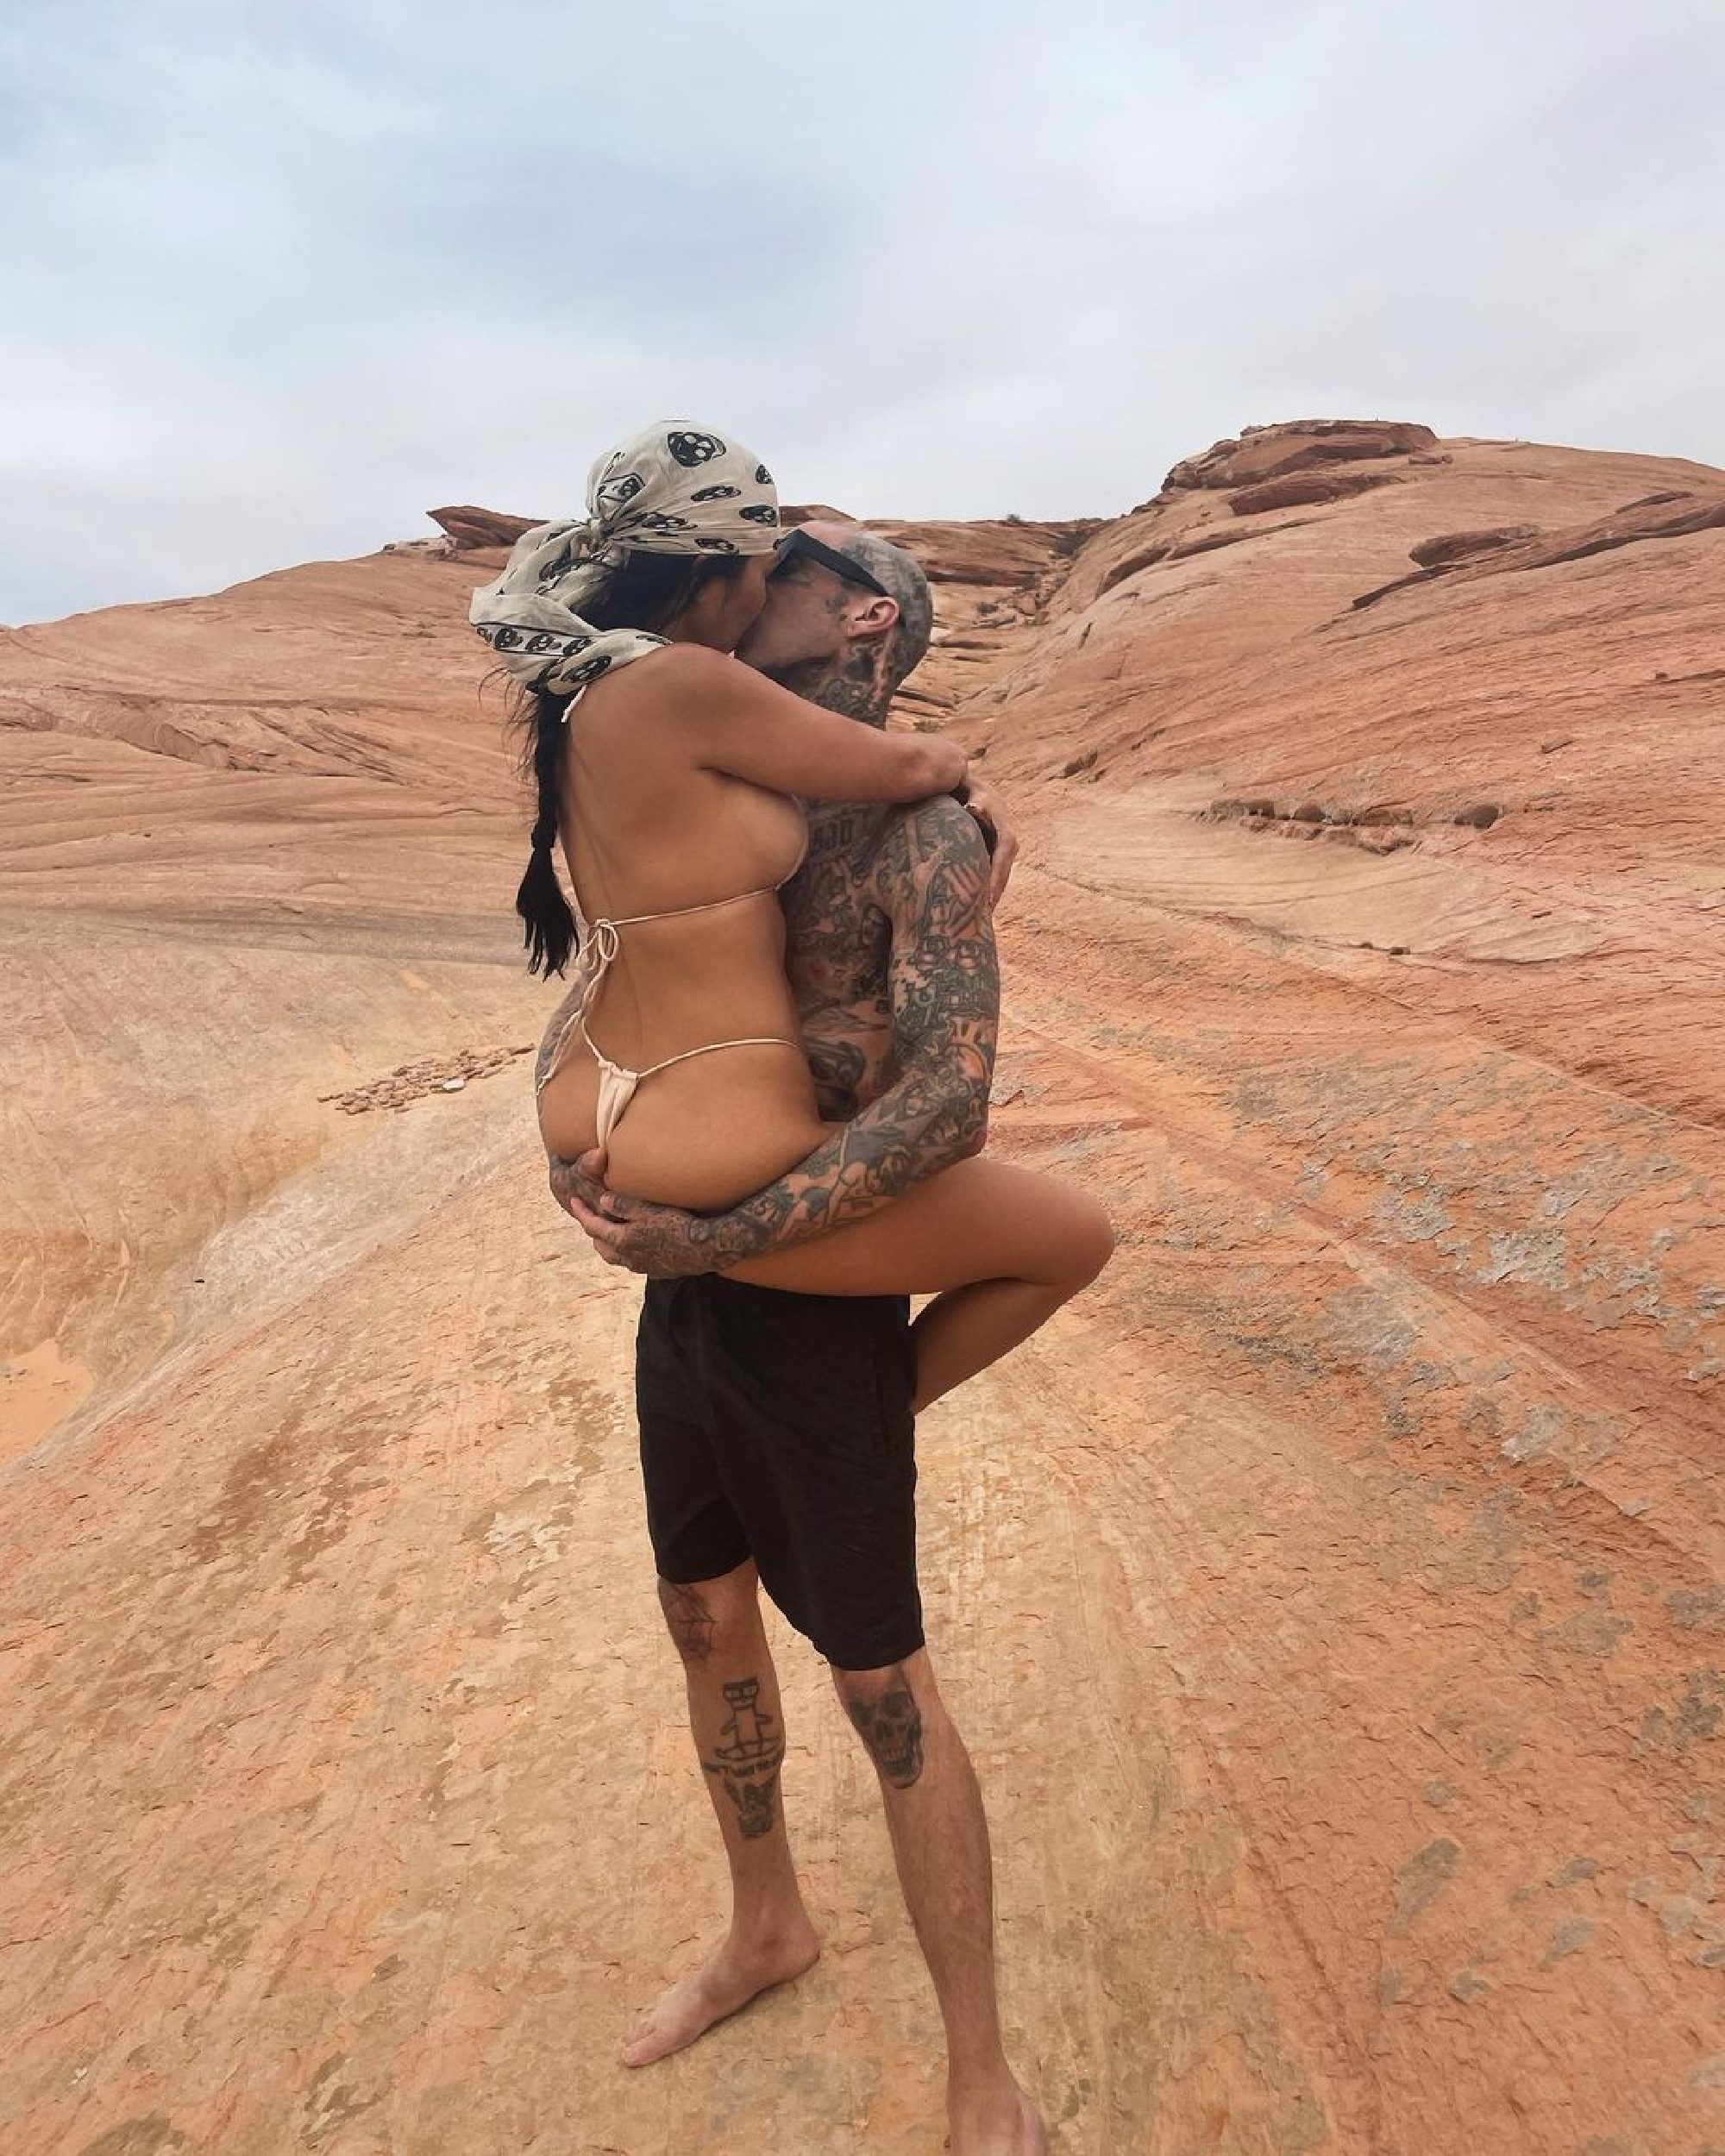 Žhavá fotka Kourtney Kardashian a Travise Barkera v poušti!